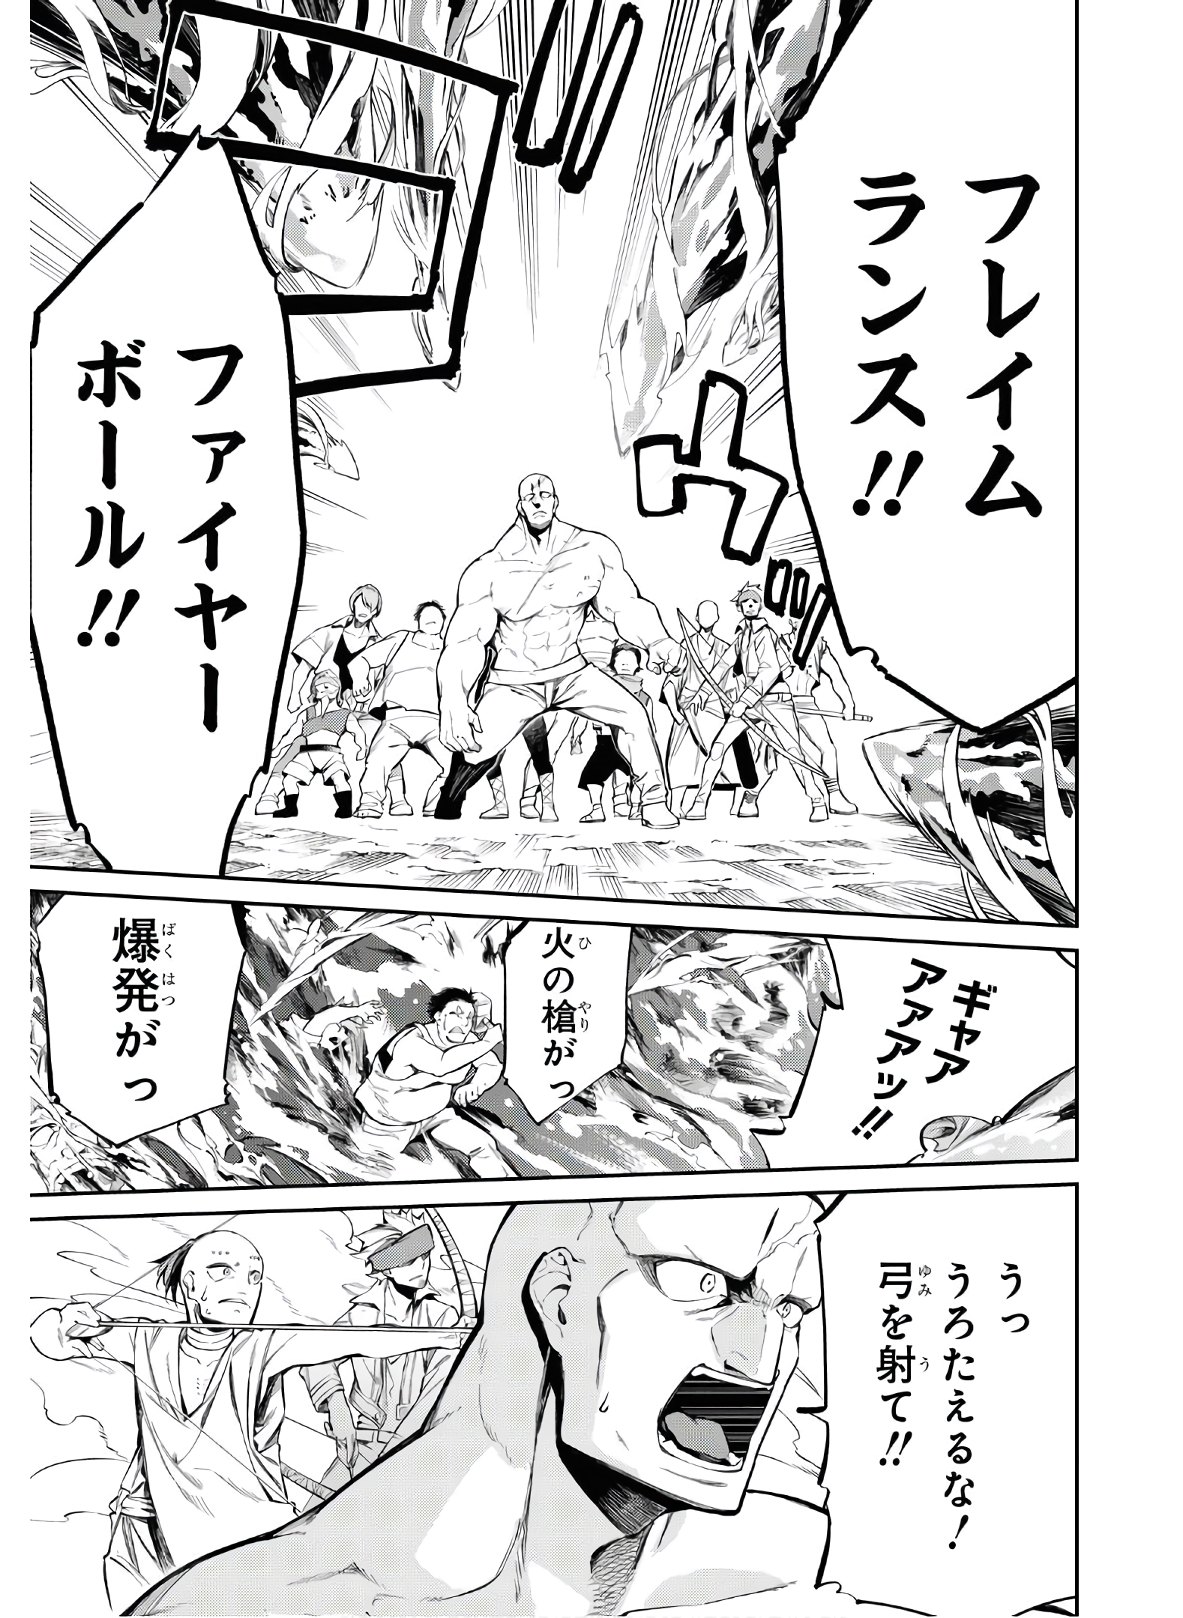 Maryoku 0 de Saikyou no Daikenja ~Sore wa Mahou dewa Nai, Butsuri da!~ - Chapter 4 - Page 11